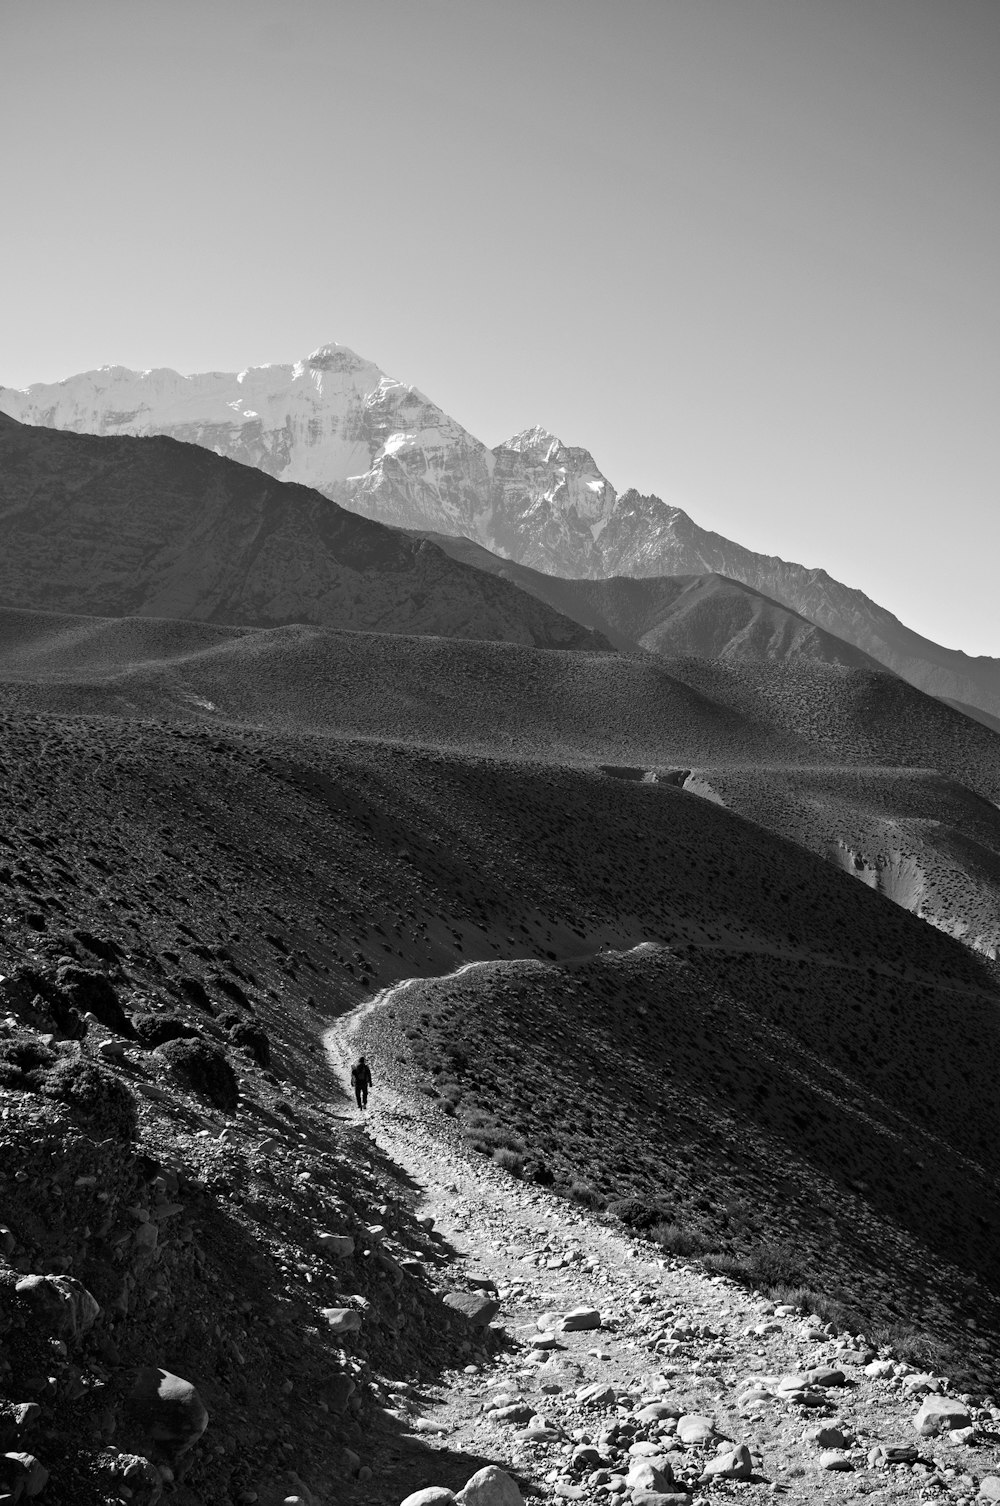 Fotografia in scala di grigi della montagna durante il giorno